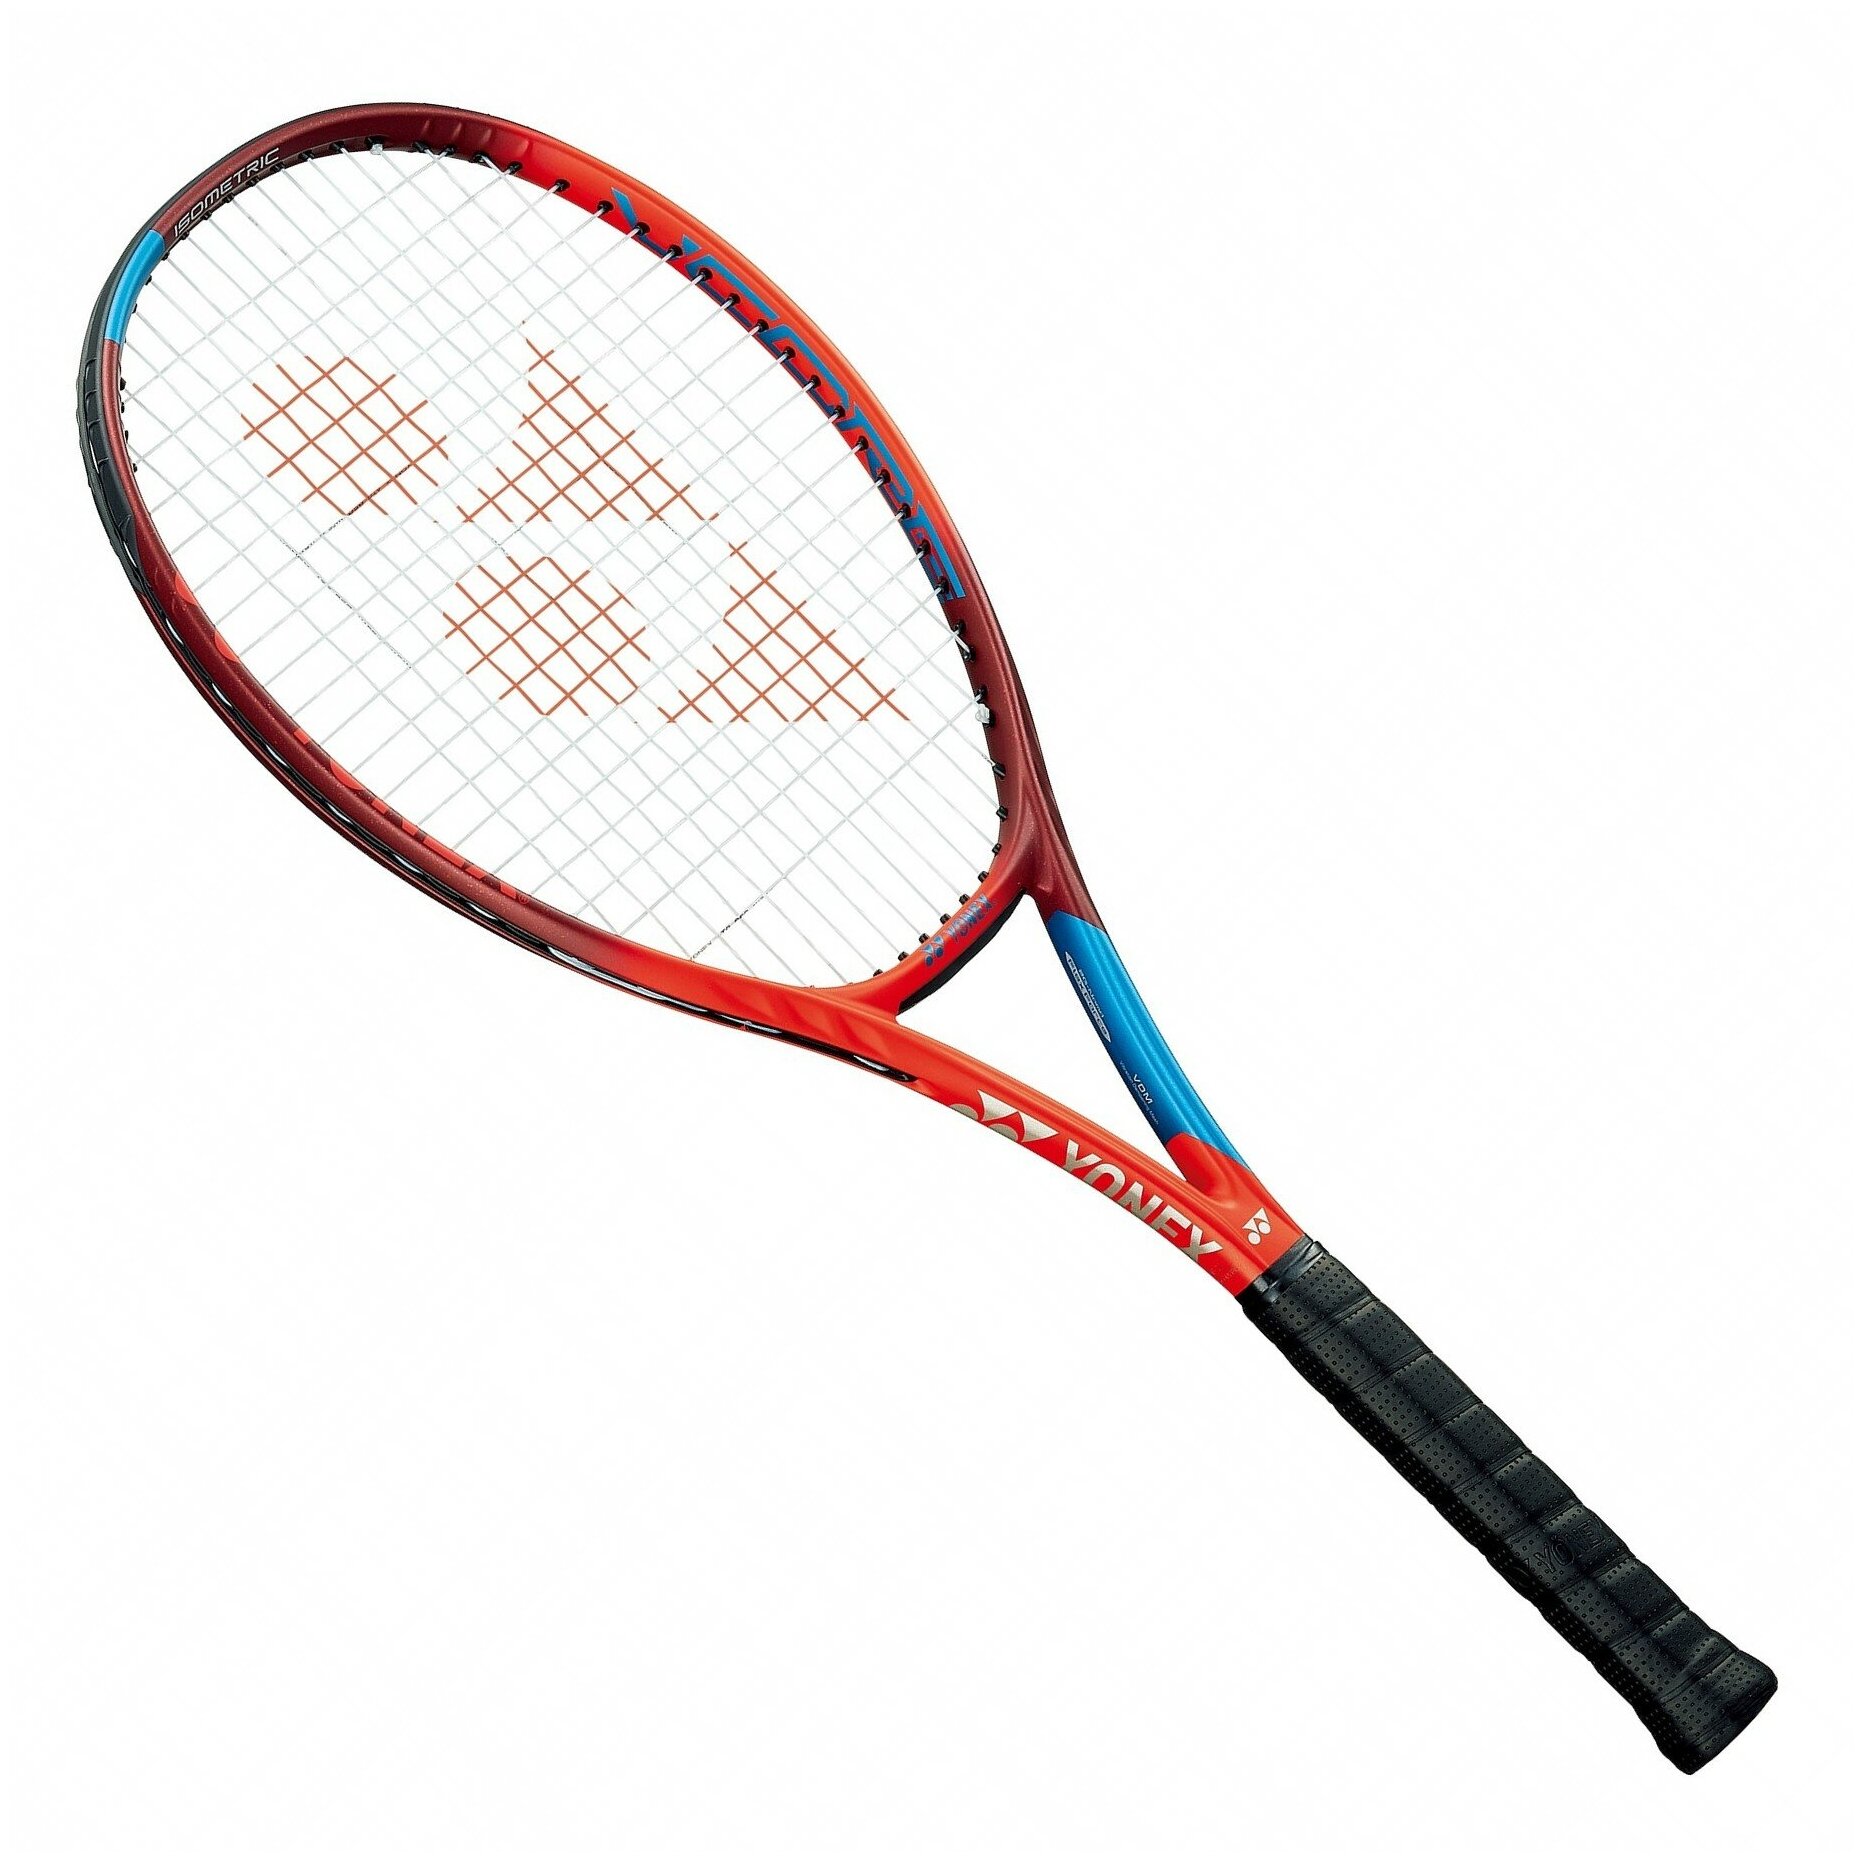 Ракетка теннисная Yonex VCORE 98 (305g) - tango red Gr3(без натяжки)